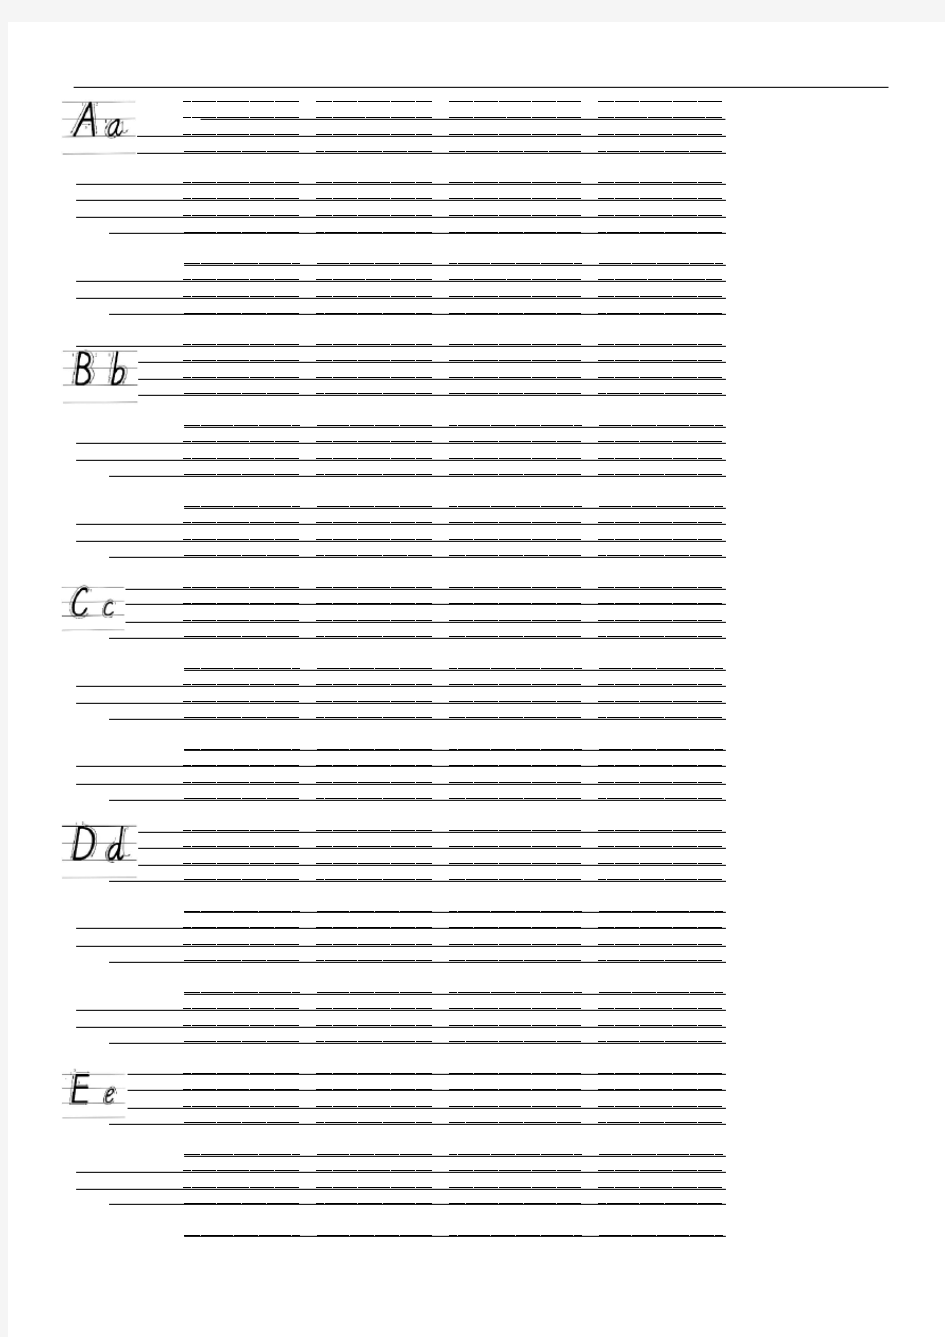 26个英文字母书写练习本-A4打印